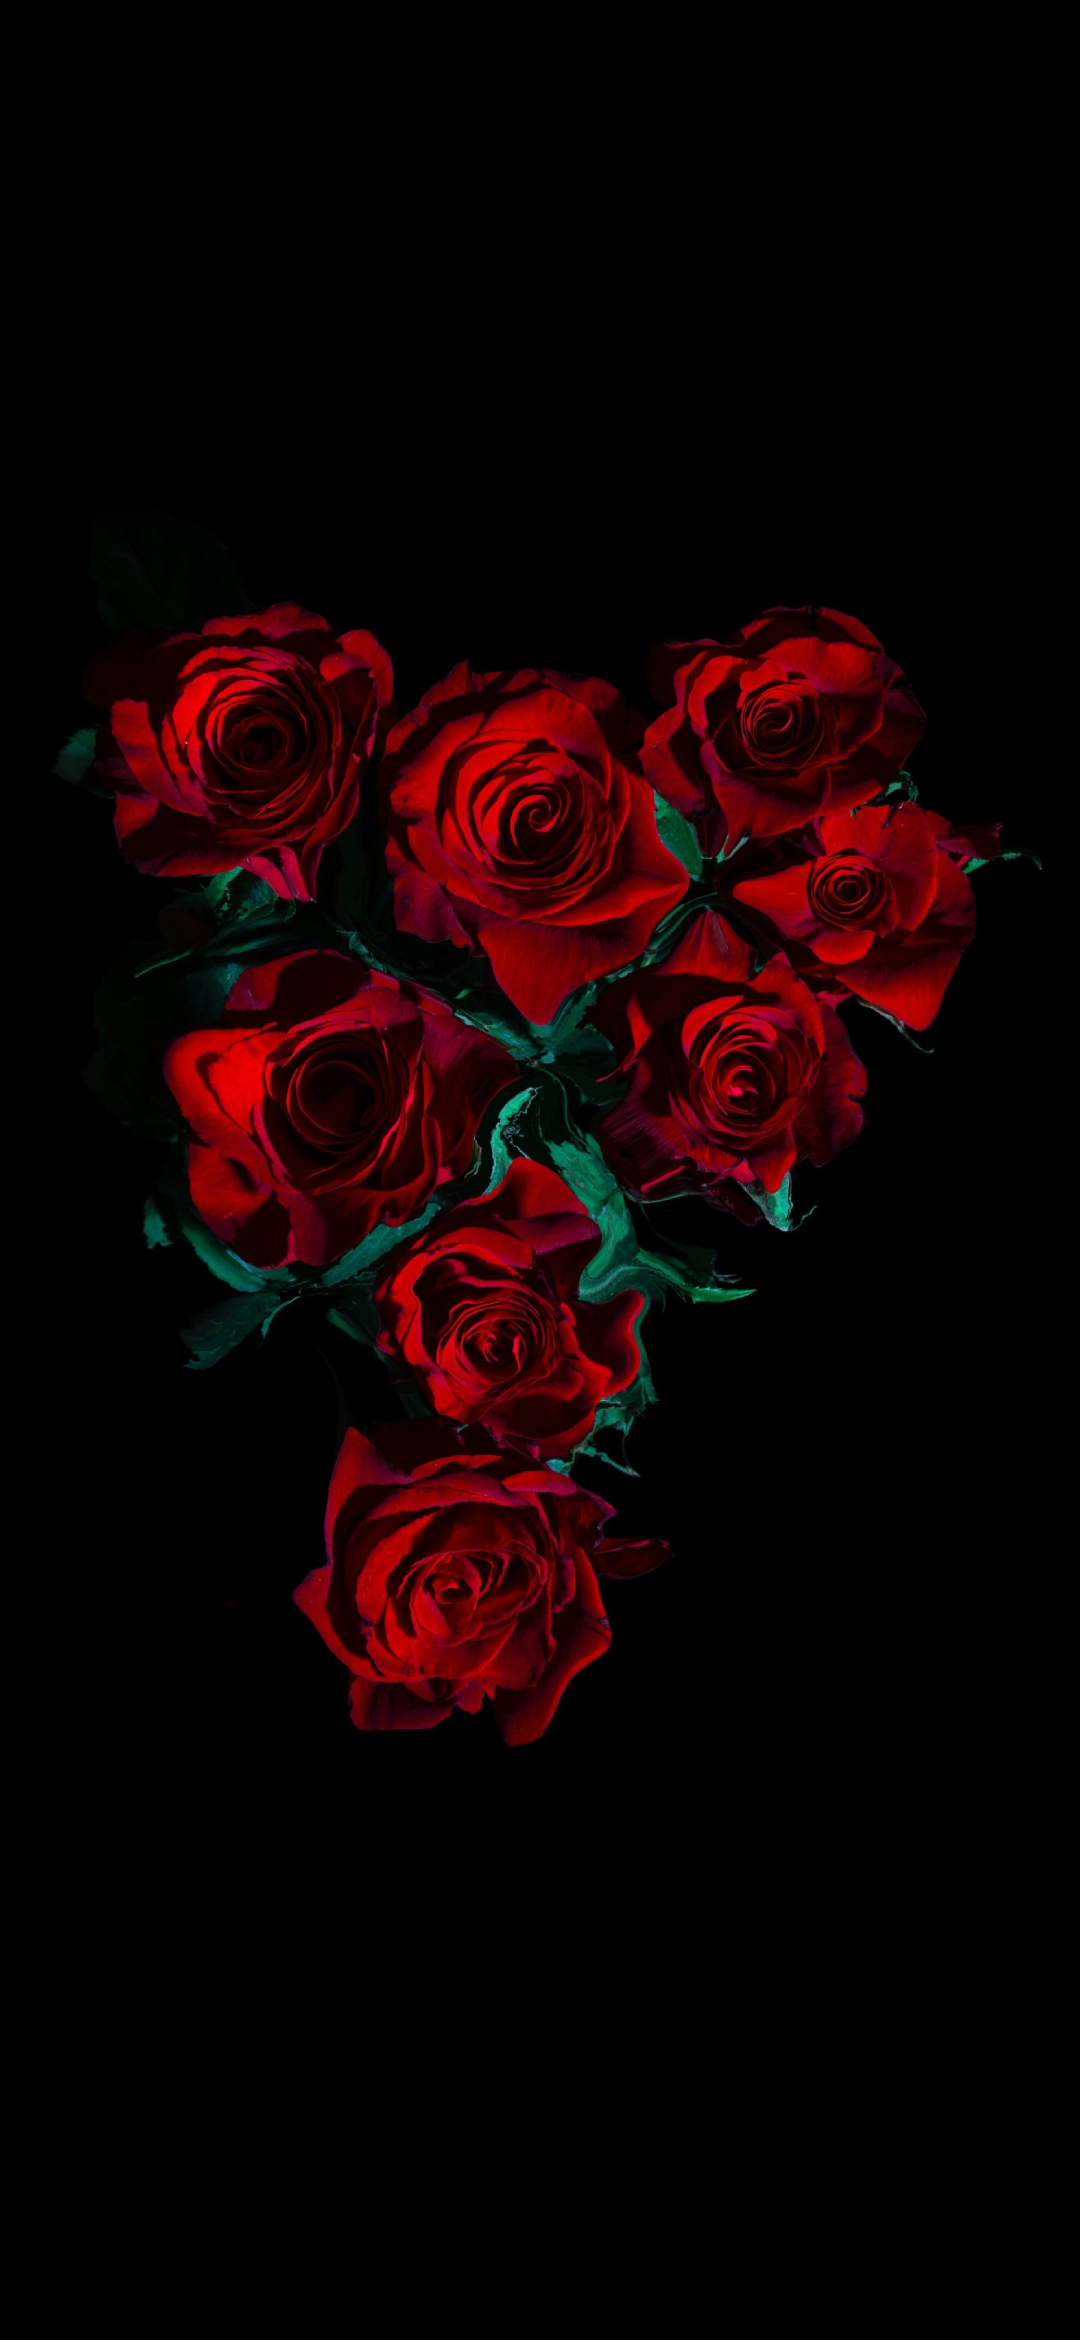 綺麗な薔薇の花 高画質 Oppo R17 Pro スマホ壁紙 待ち受け スマラン